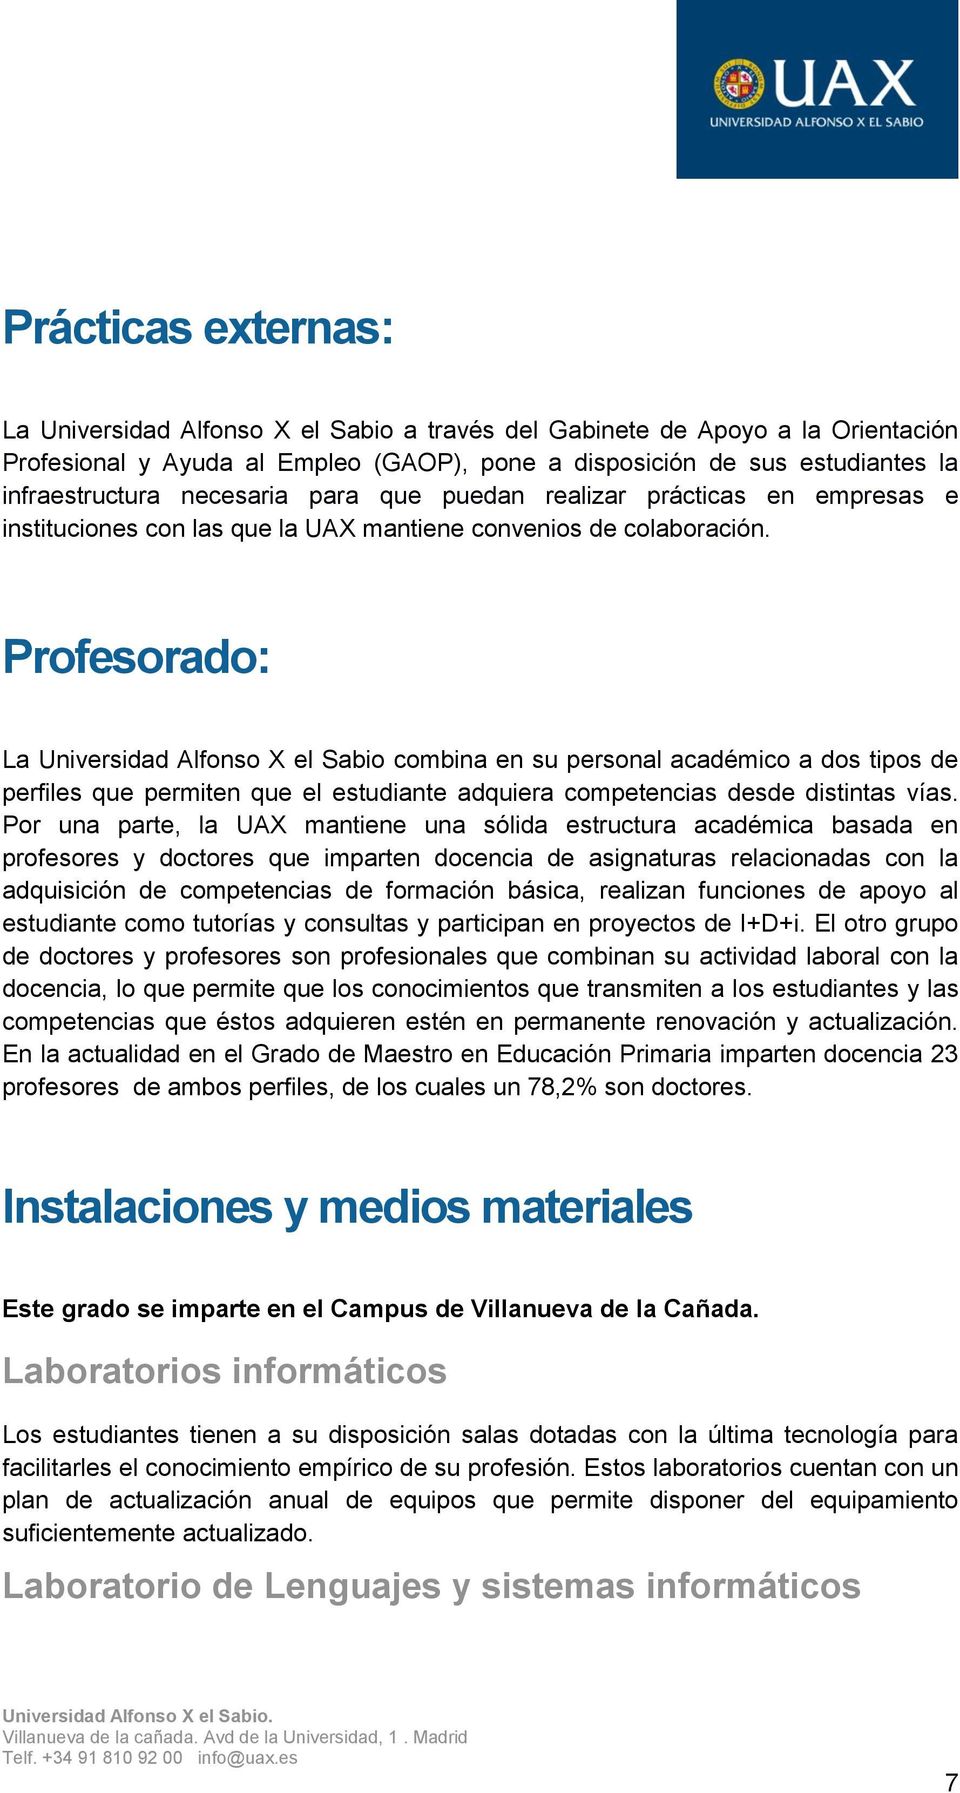 Profesorado: La Universidad Alfonso X el Sabio combina en su personal académico a dos tipos de perfiles que permiten que el estudiante adquiera competencias desde distintas vías.